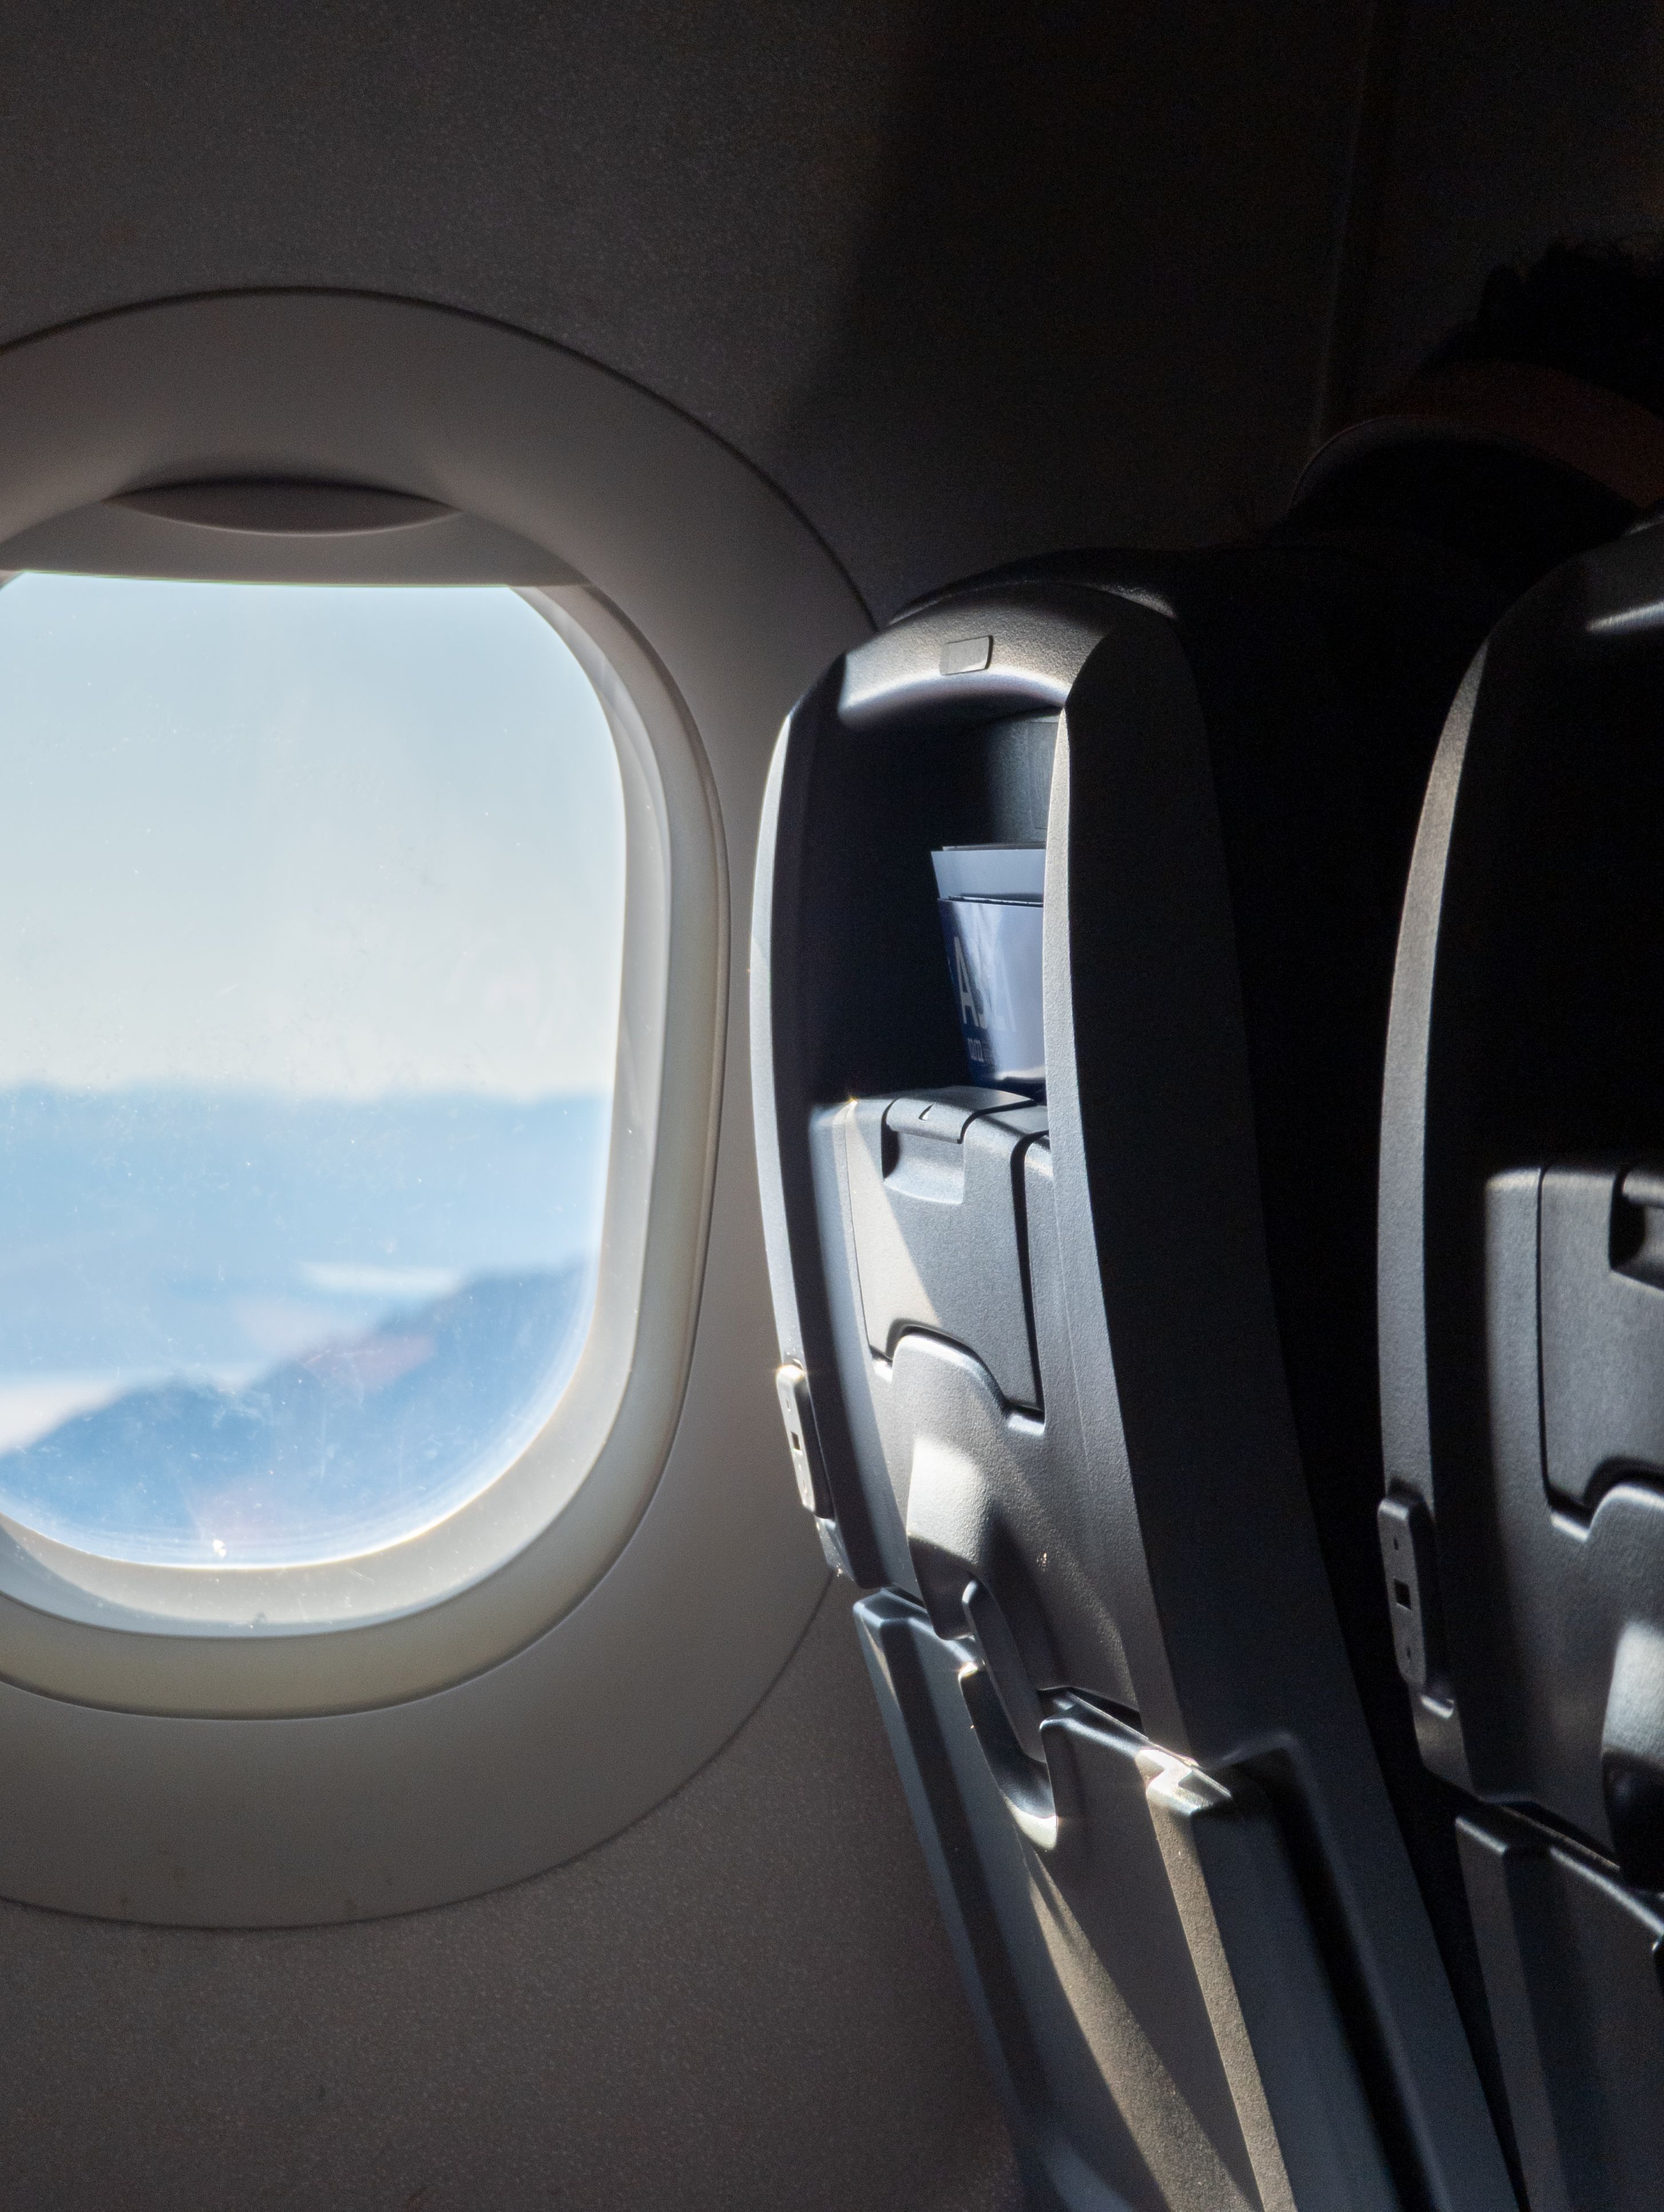 File foto RAW yang memperlihatkan jendela dan kursi pesawat, diedit untuk mengubah Saturasinya.